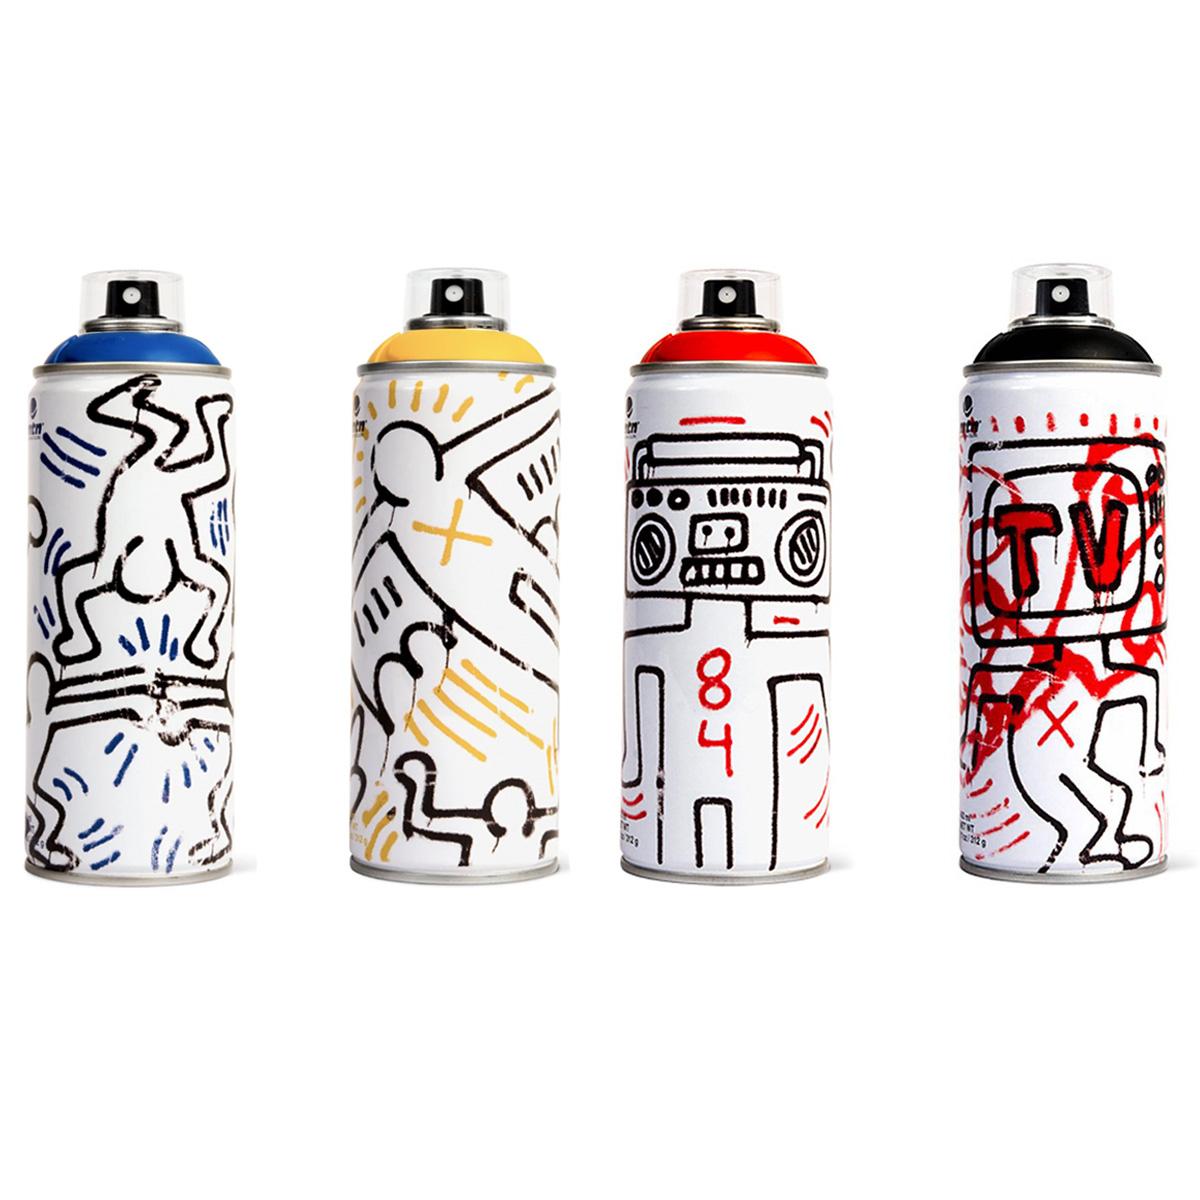 Édition limitée du set de peinture en spray Keith Haring - Print de (after) Keith Haring